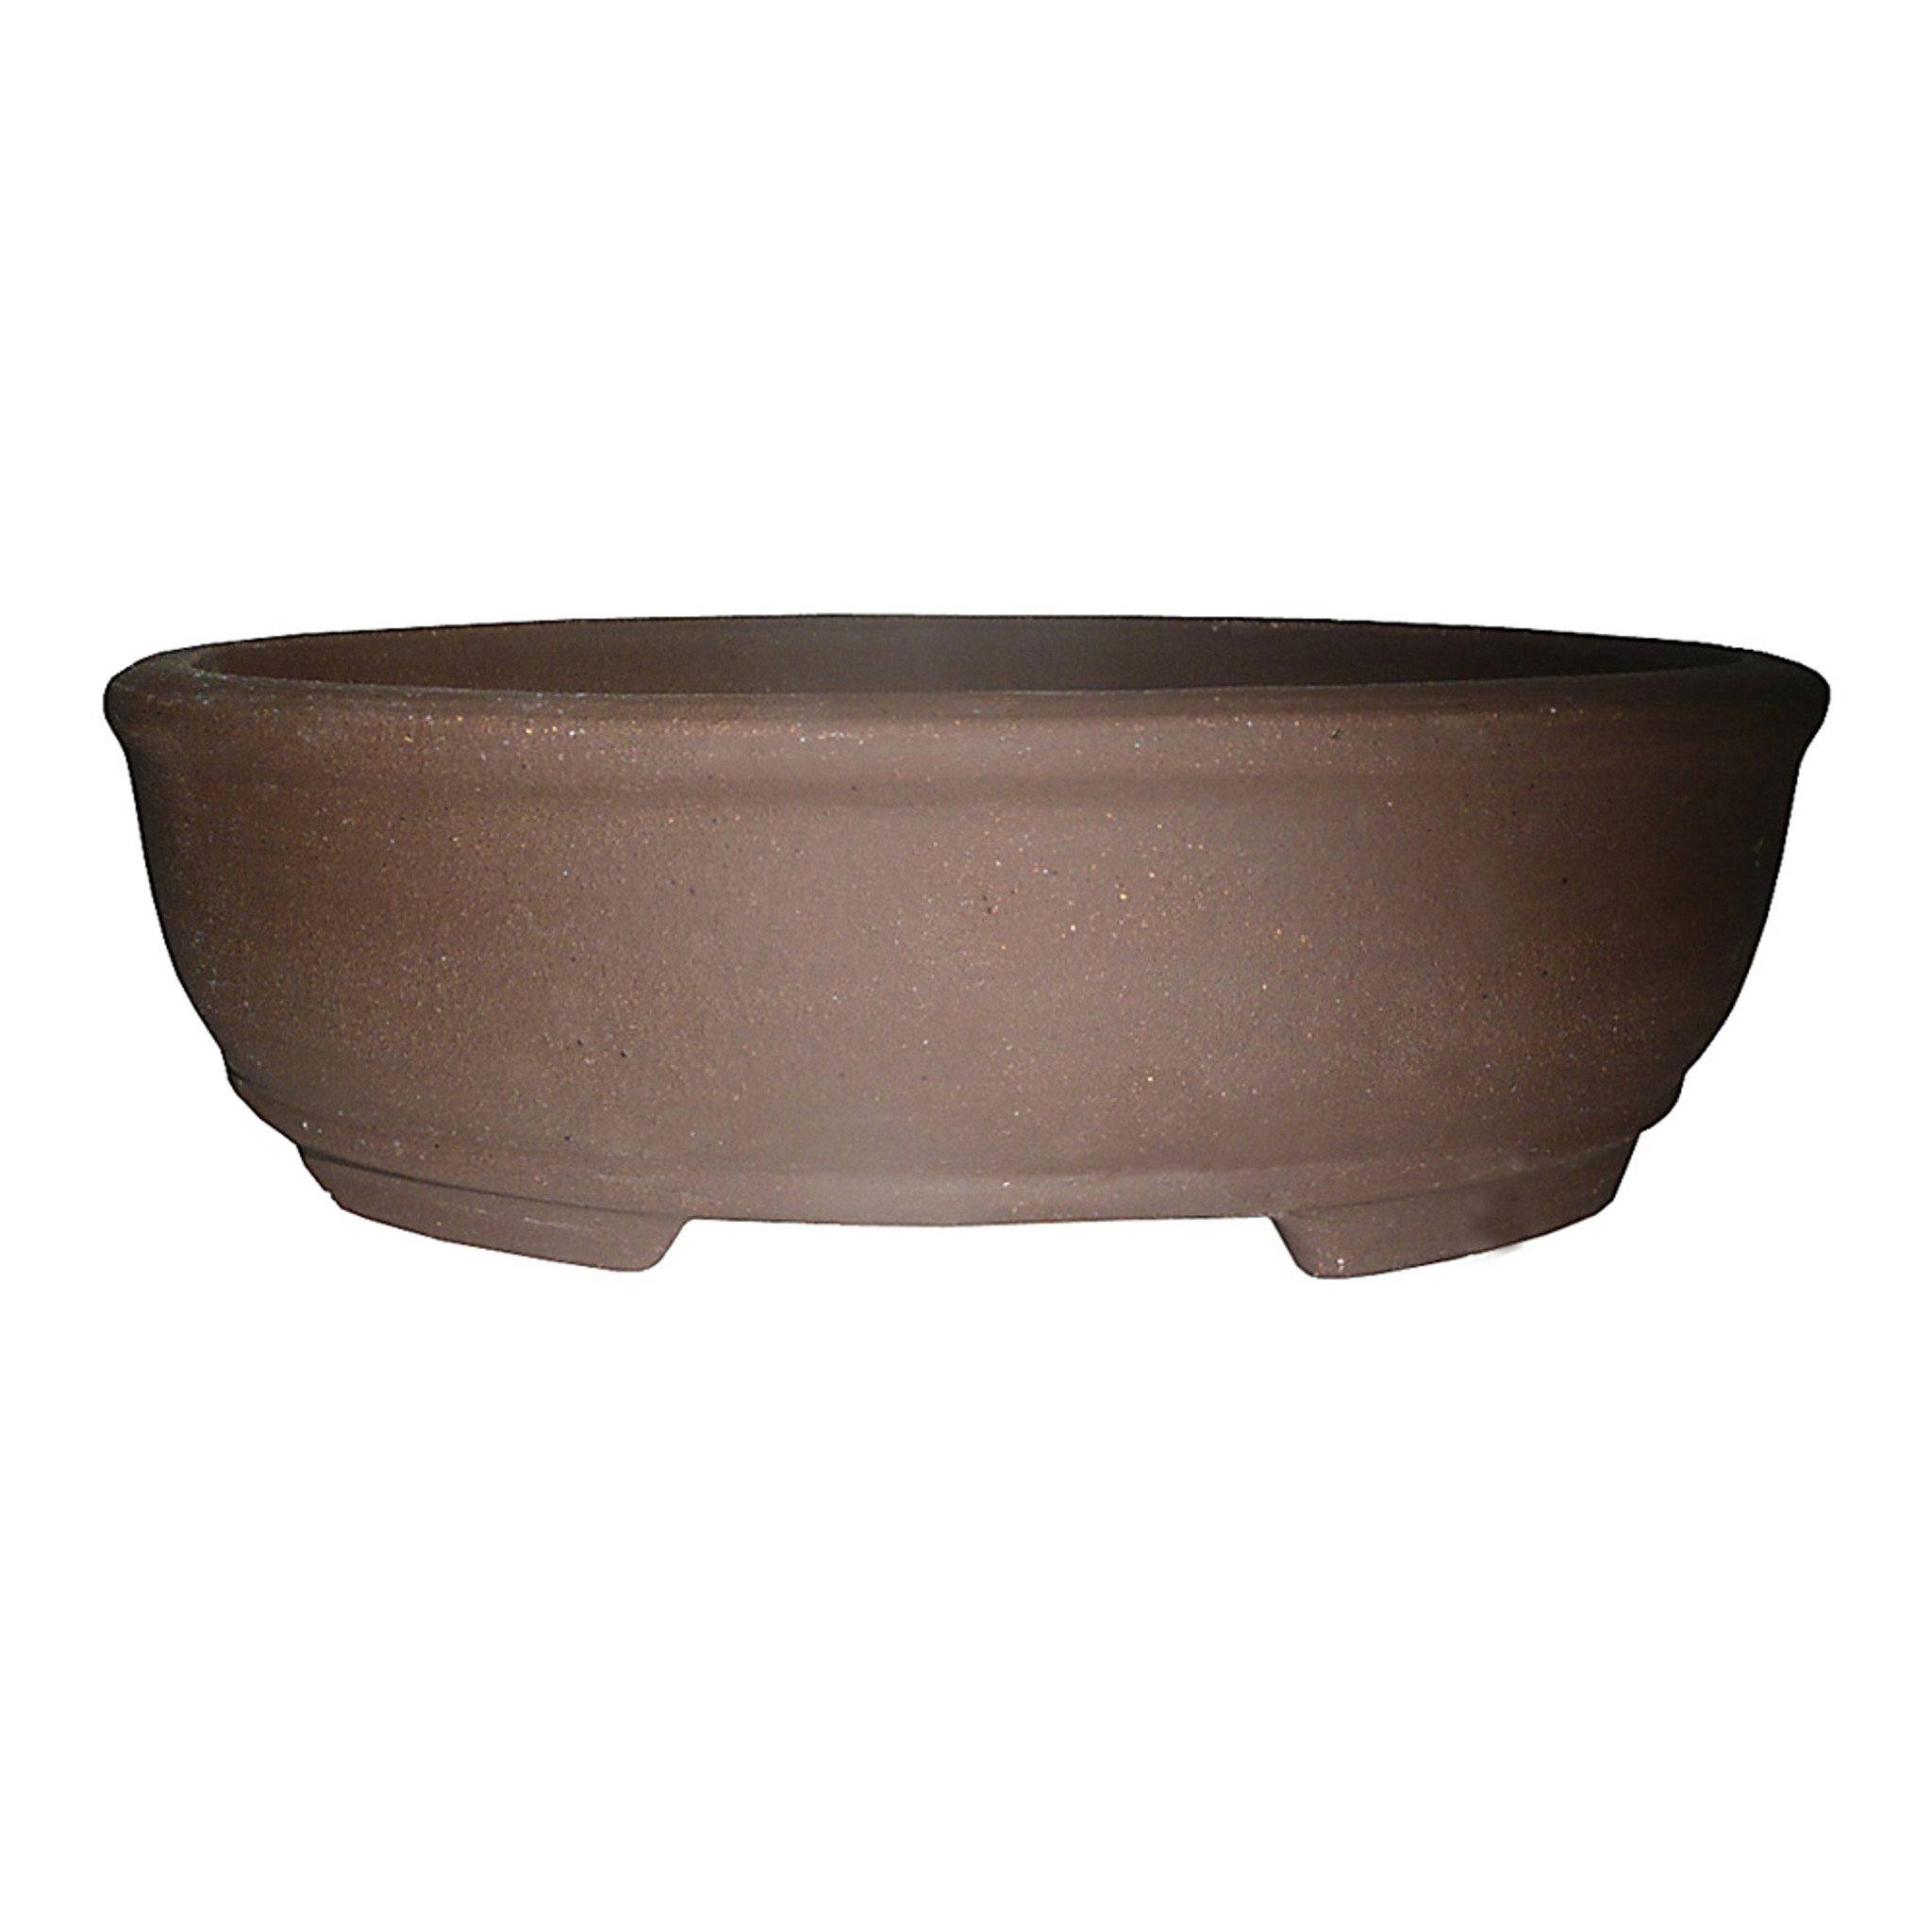 Brussel's Bonsai 9.7-in W x 3.4-in H Brown Ceramic Planter | CUPO3-12